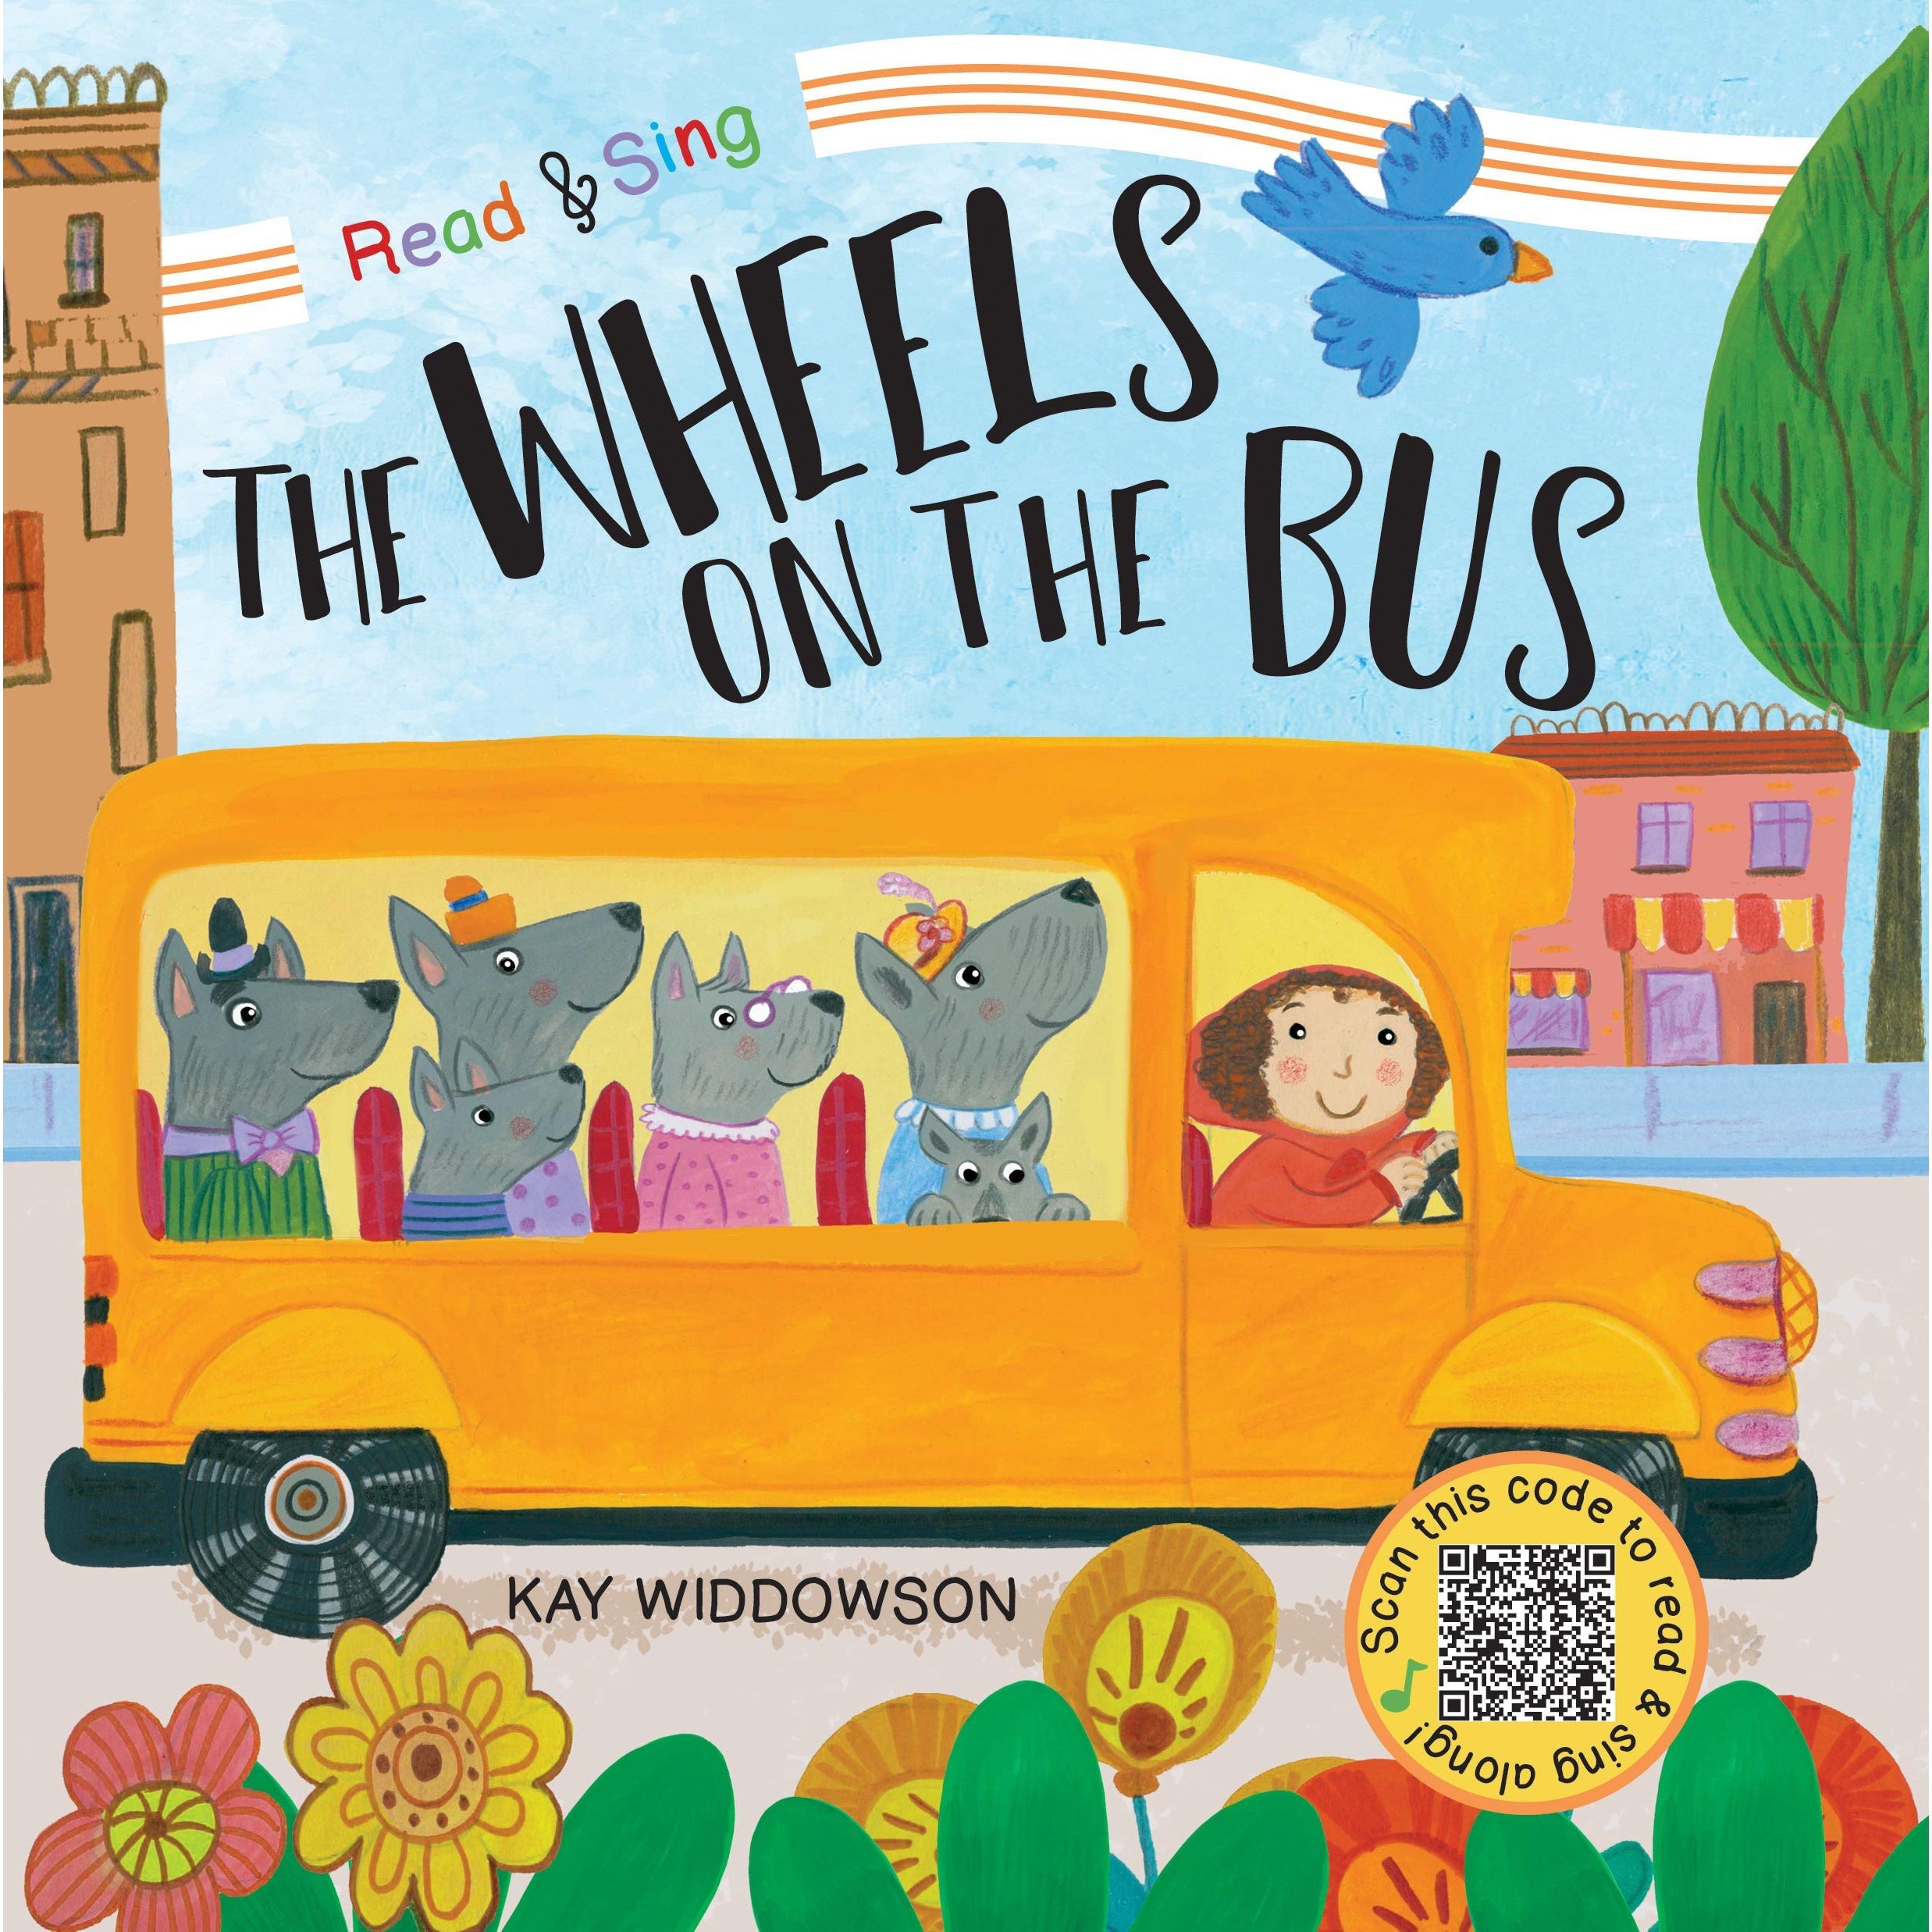 Melissa & Doug Poke-A-Dot Wheels on The Bus Book